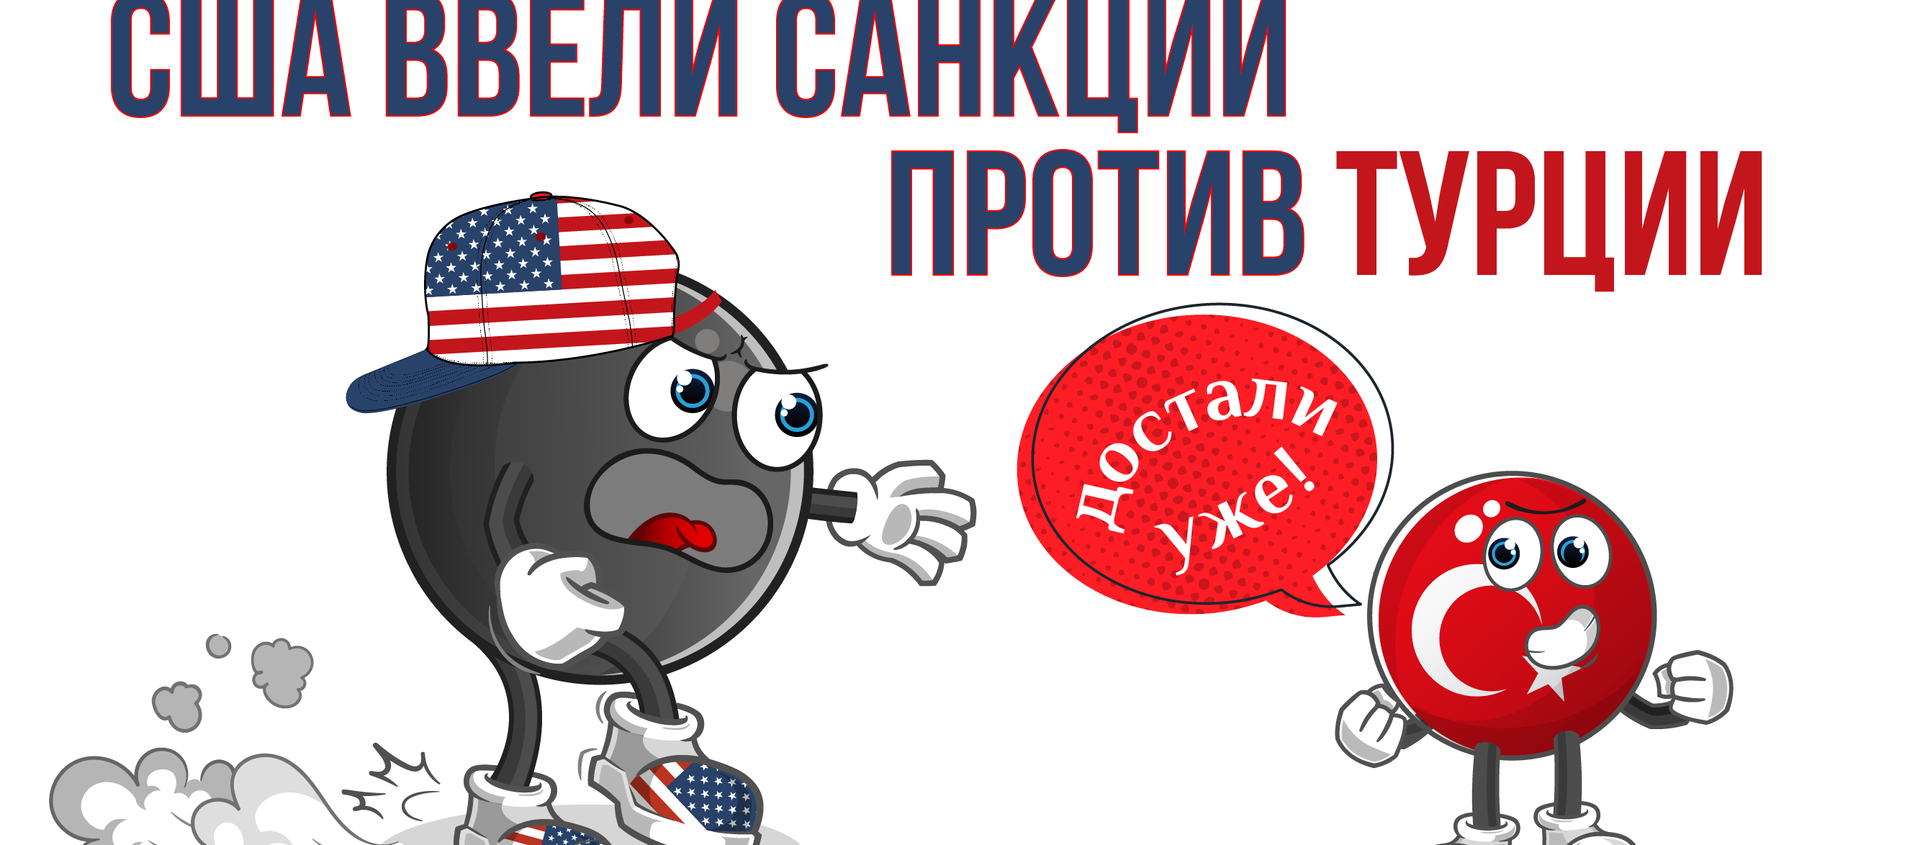 США вводят санкции против Турции за покупку С-400 у России - Sputnik Узбекистан, 1920, 16.12.2020